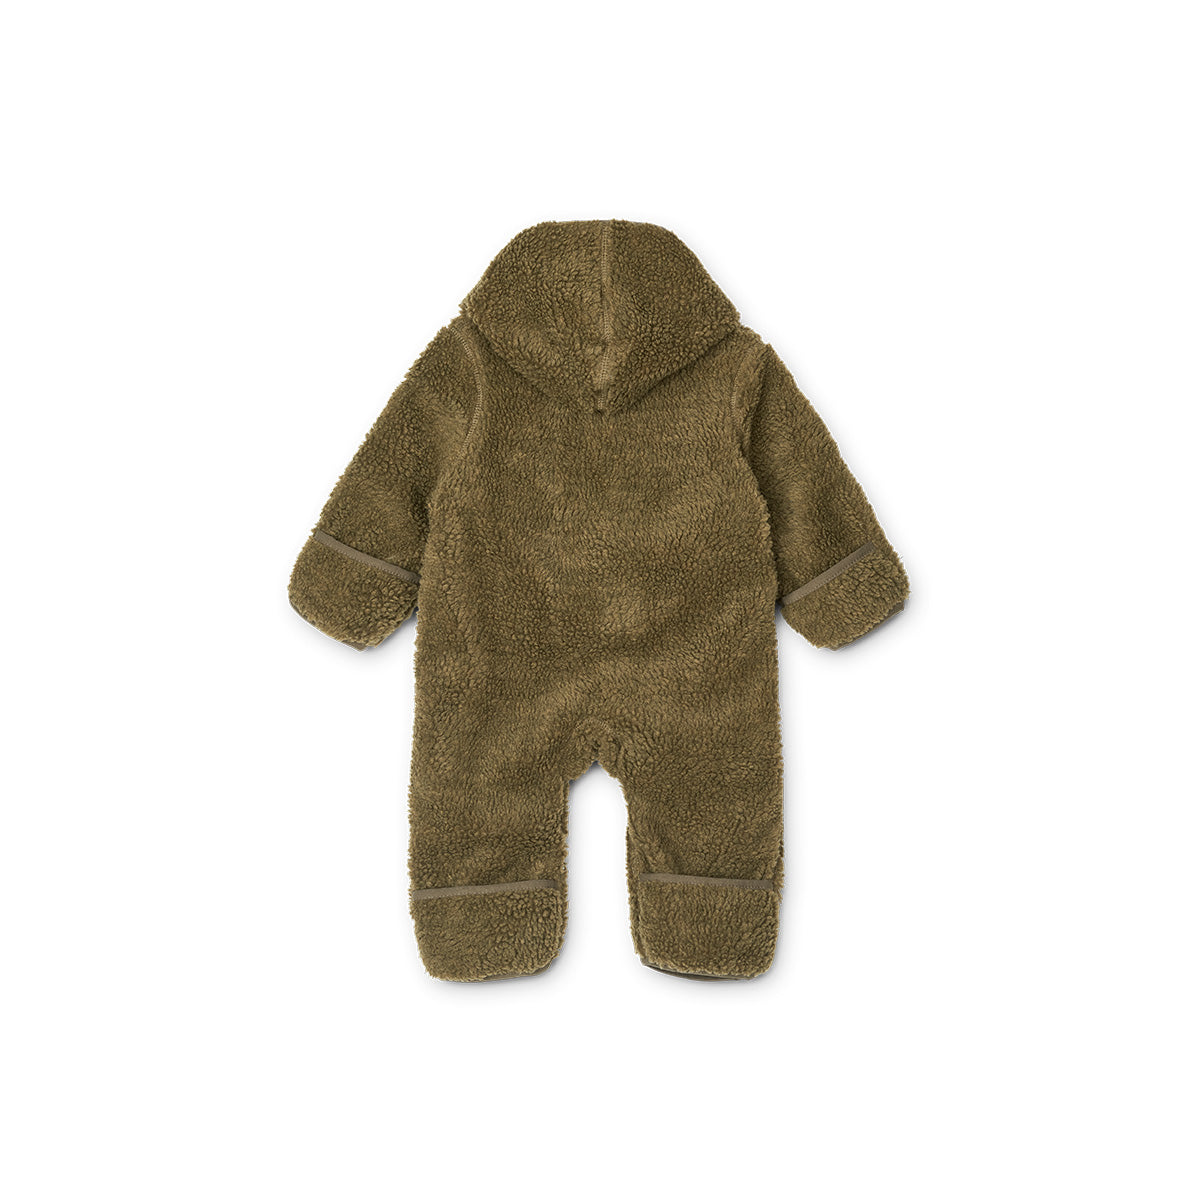 Tover jouw mini om tot een klein teddy beertje met deze baby jumpsuit teddy khaki van Liewood. Warm, zacht en superschattig. Het babypakje van teddystof is eenvoudig aan en uit te trekken door drukknopen. VanZus